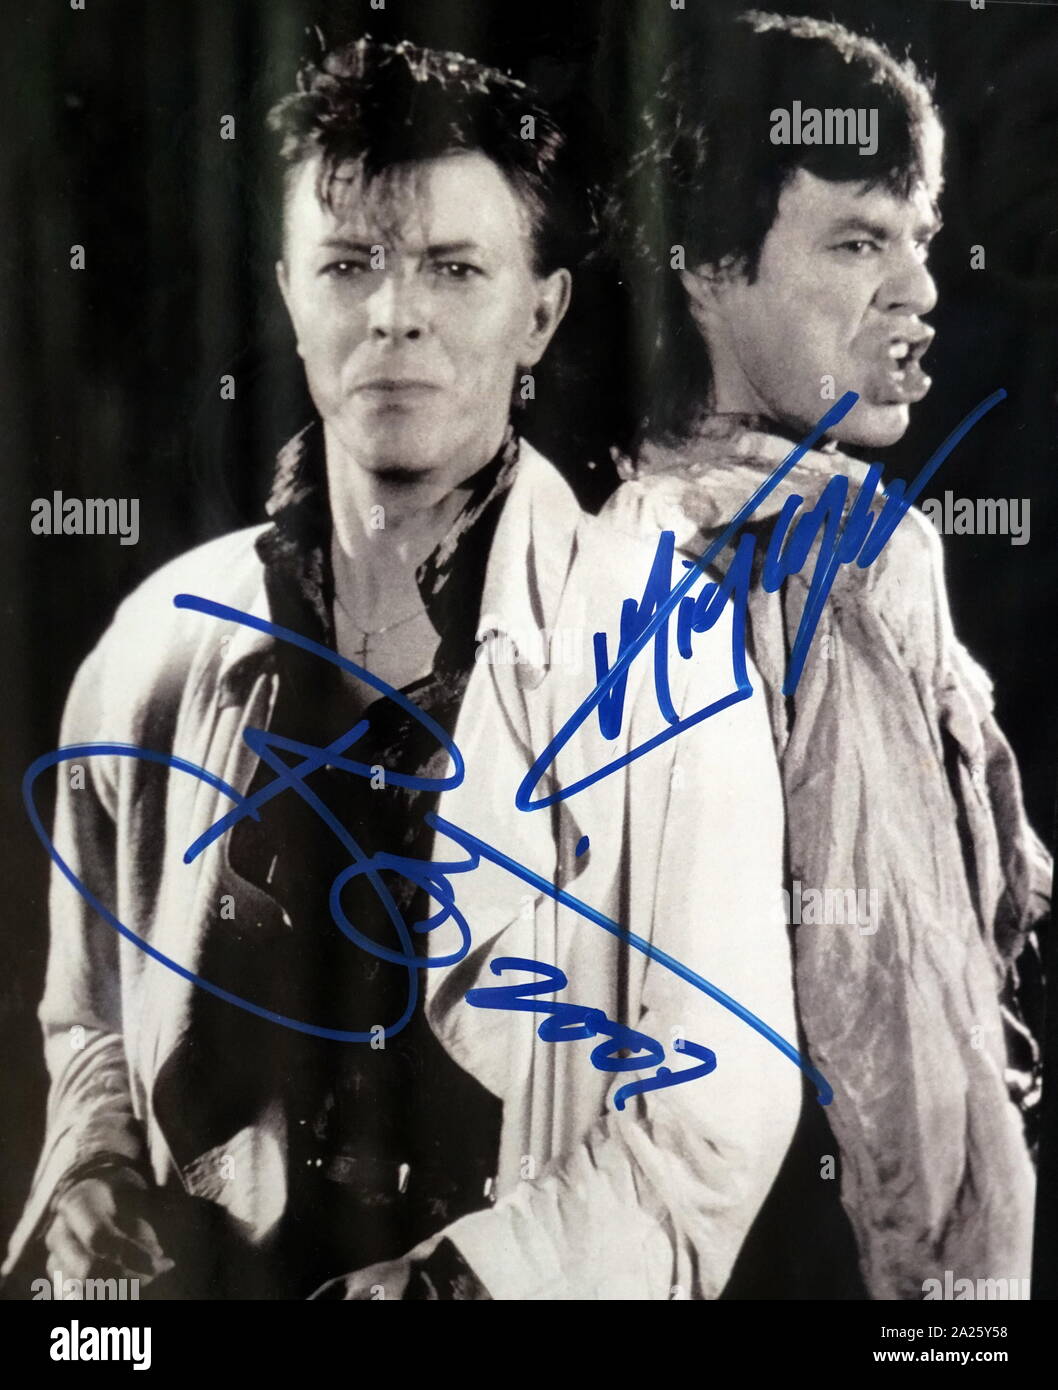 Firmato Fotografia di David Bowie e Mick Jagger. David Robert Jones (1947-2016) un cantante inglese, il cantautore e attore. Sir Michael Philip Jagger (1943-) un cantante inglese, cantautore, attore e produttore cinematografico. Foto Stock